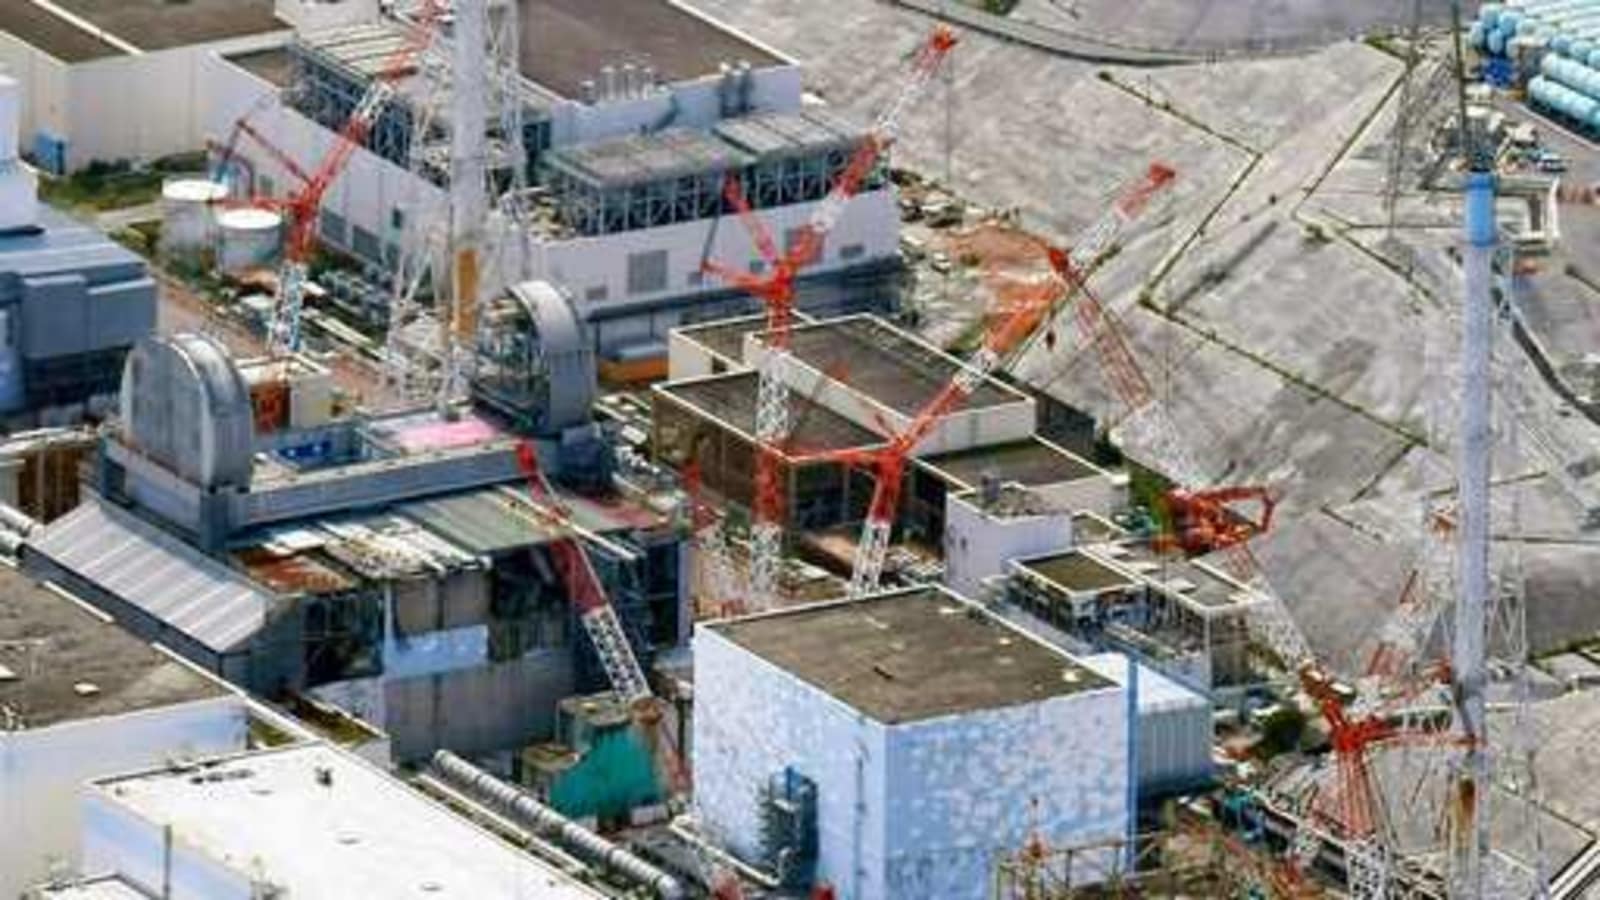 fukushima reactor meltdown in japan